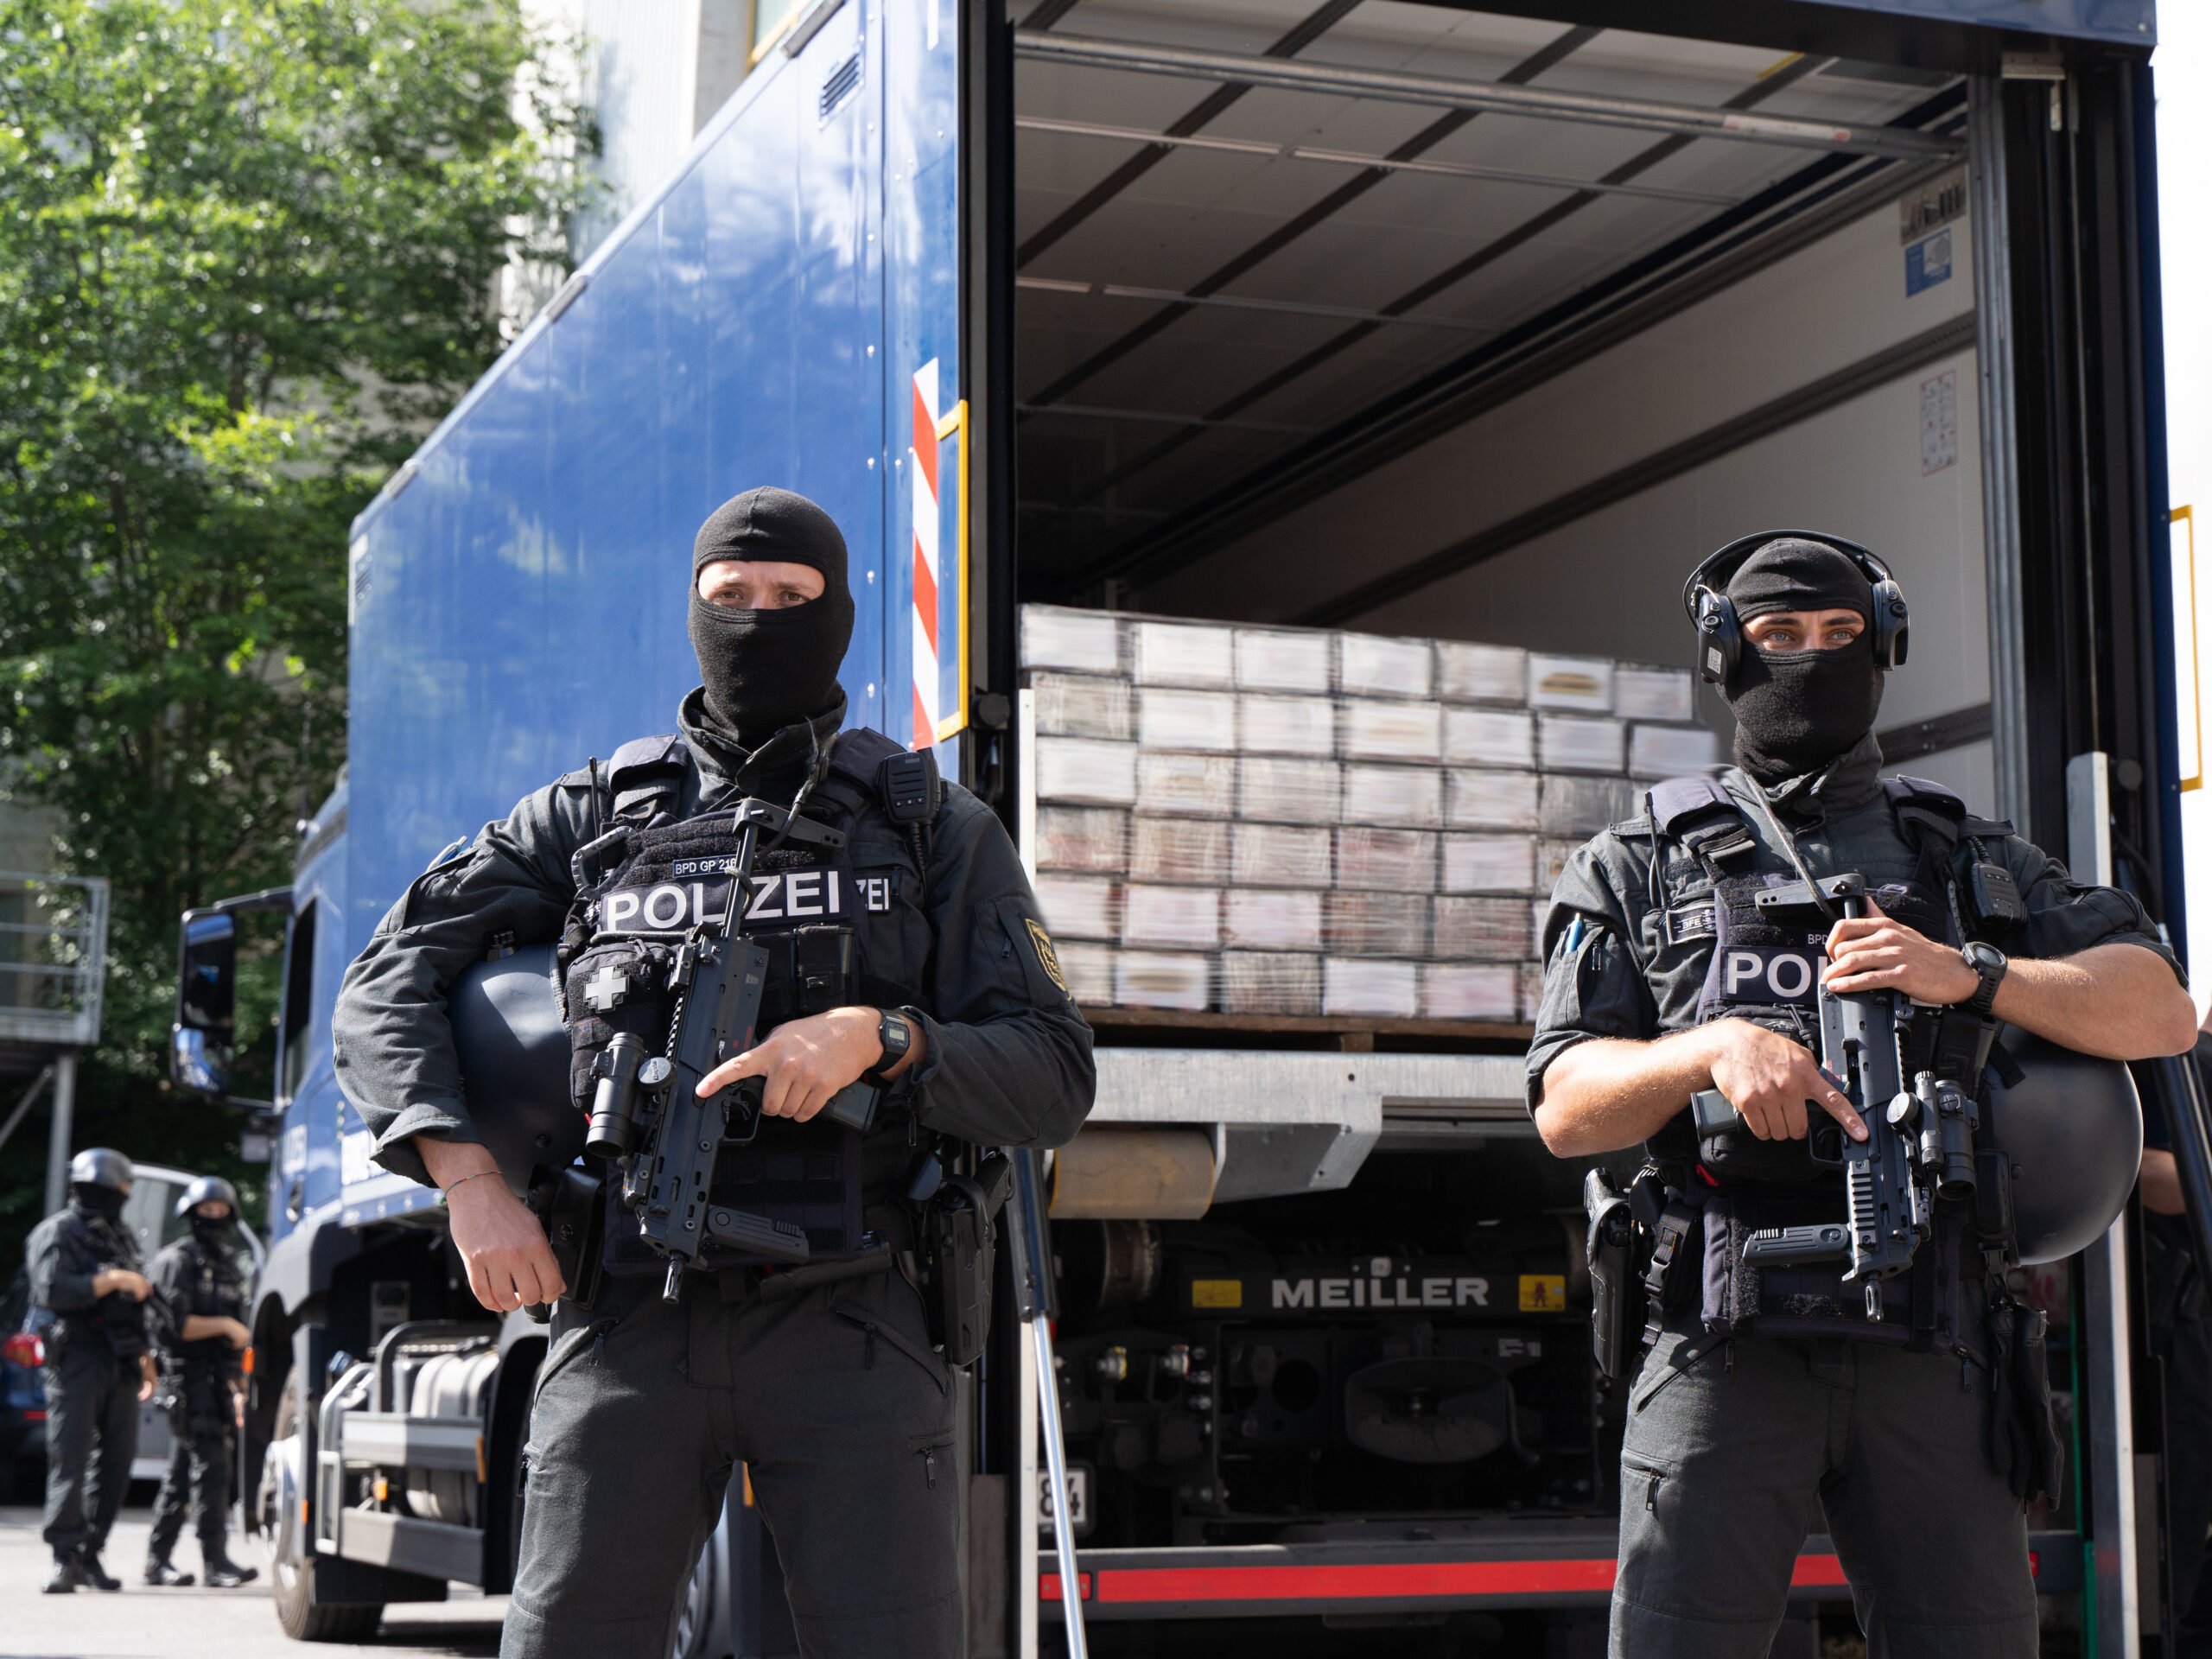 Schwer bewaffnete Polizisten bewachen sichergestelltes Kokain. Die Drogenbanden schleusen immer größere Mengen nach Europa.